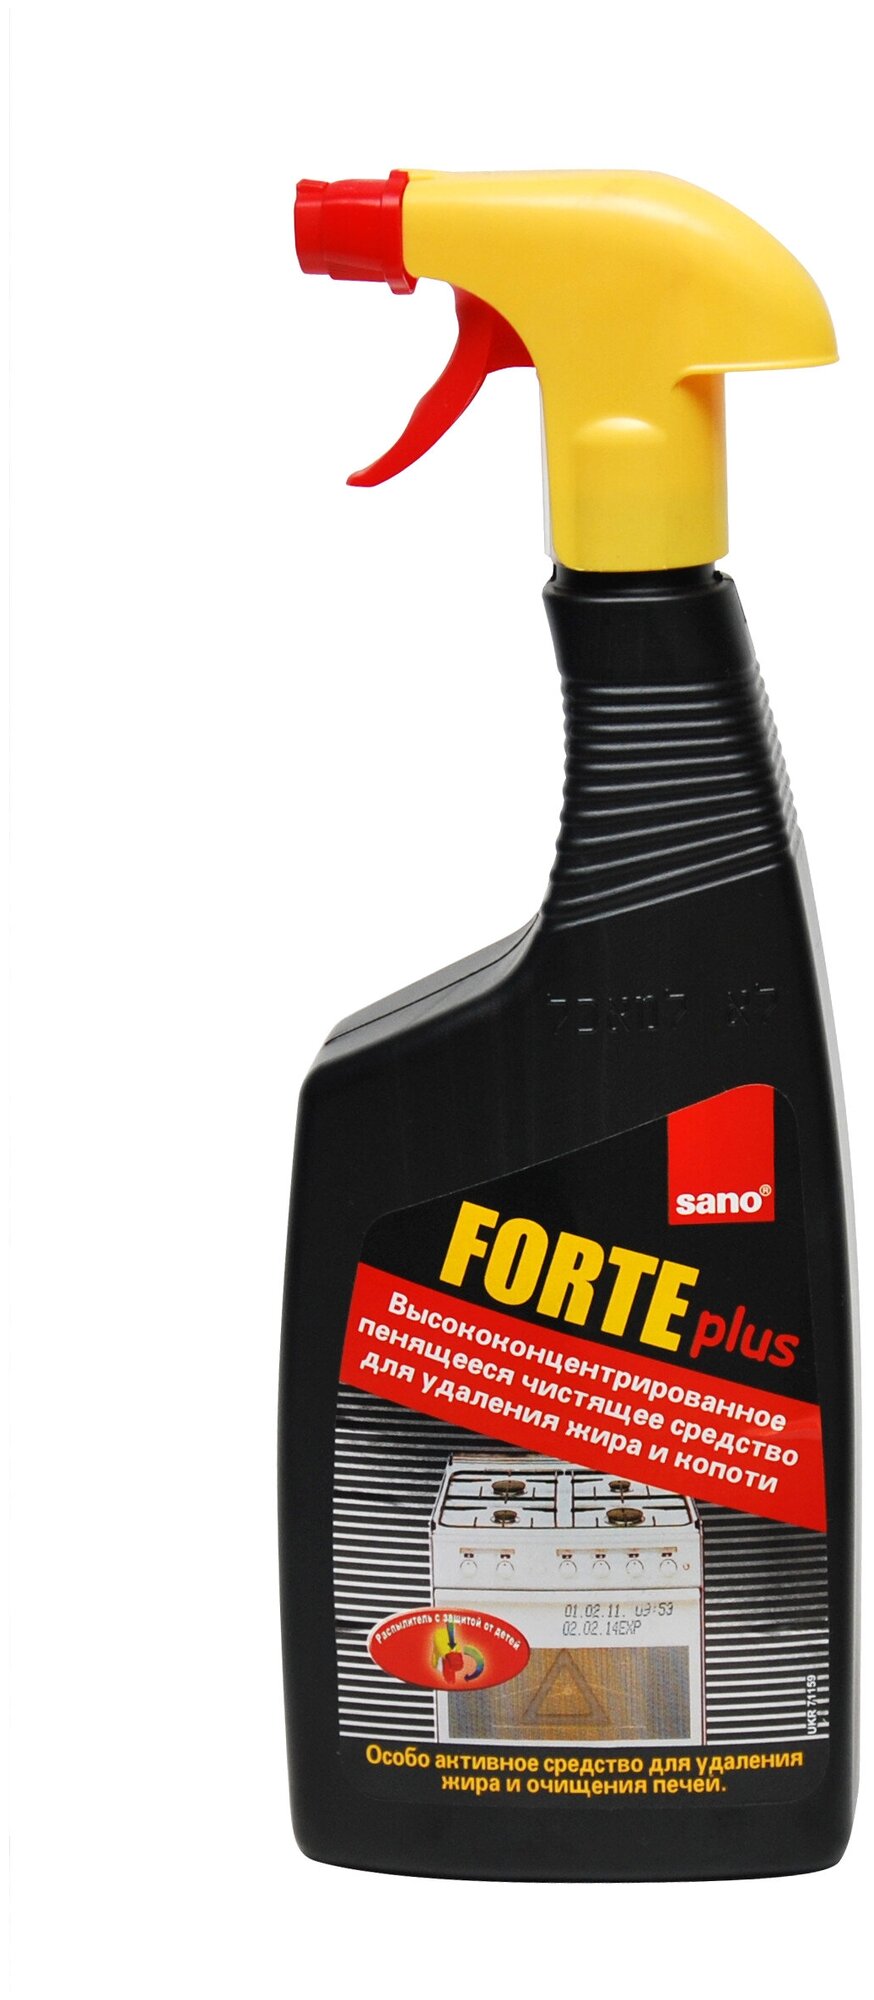 Oчиститель духовых шкафов для удаления жира и сажи Forte Plus Sano